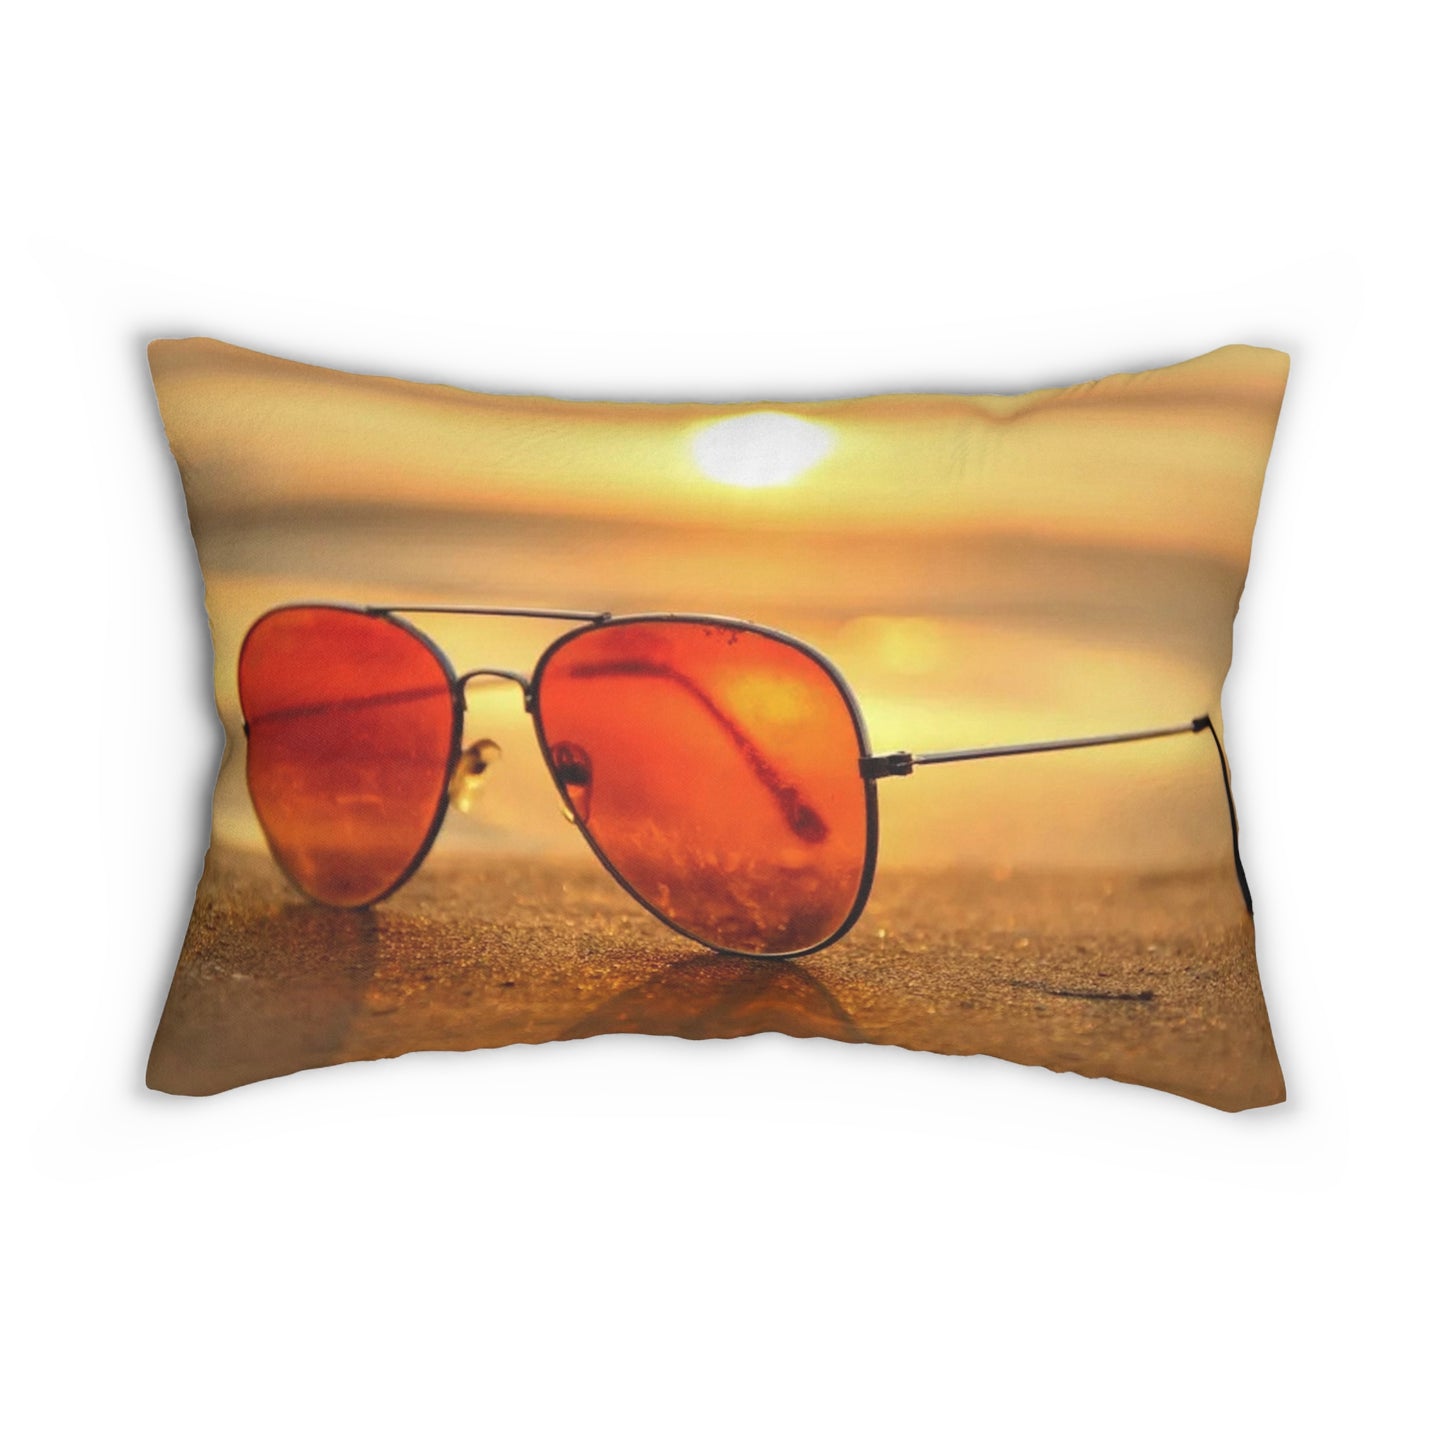 Sunglasses Spun Polyester Lumbar Pillow